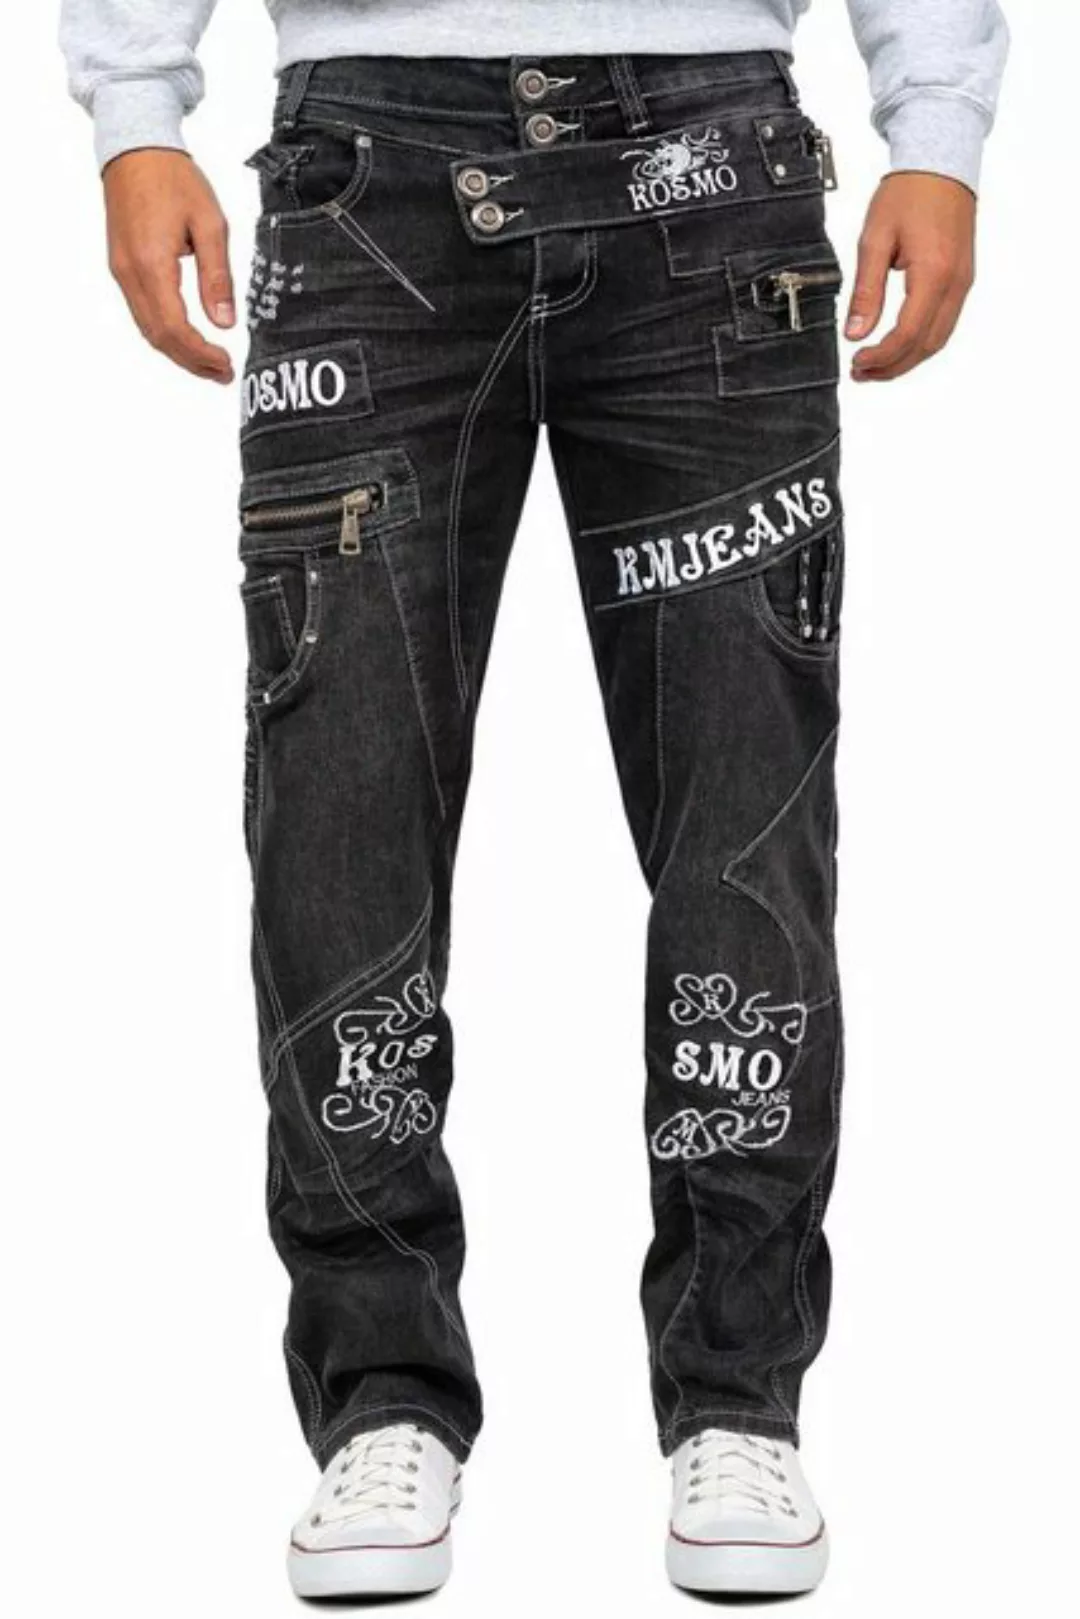 Kosmo Lupo 5-Pocket-Jeans Auffällige Herren Hose BA-KM051-2 Grau W34/L34 (1 günstig online kaufen